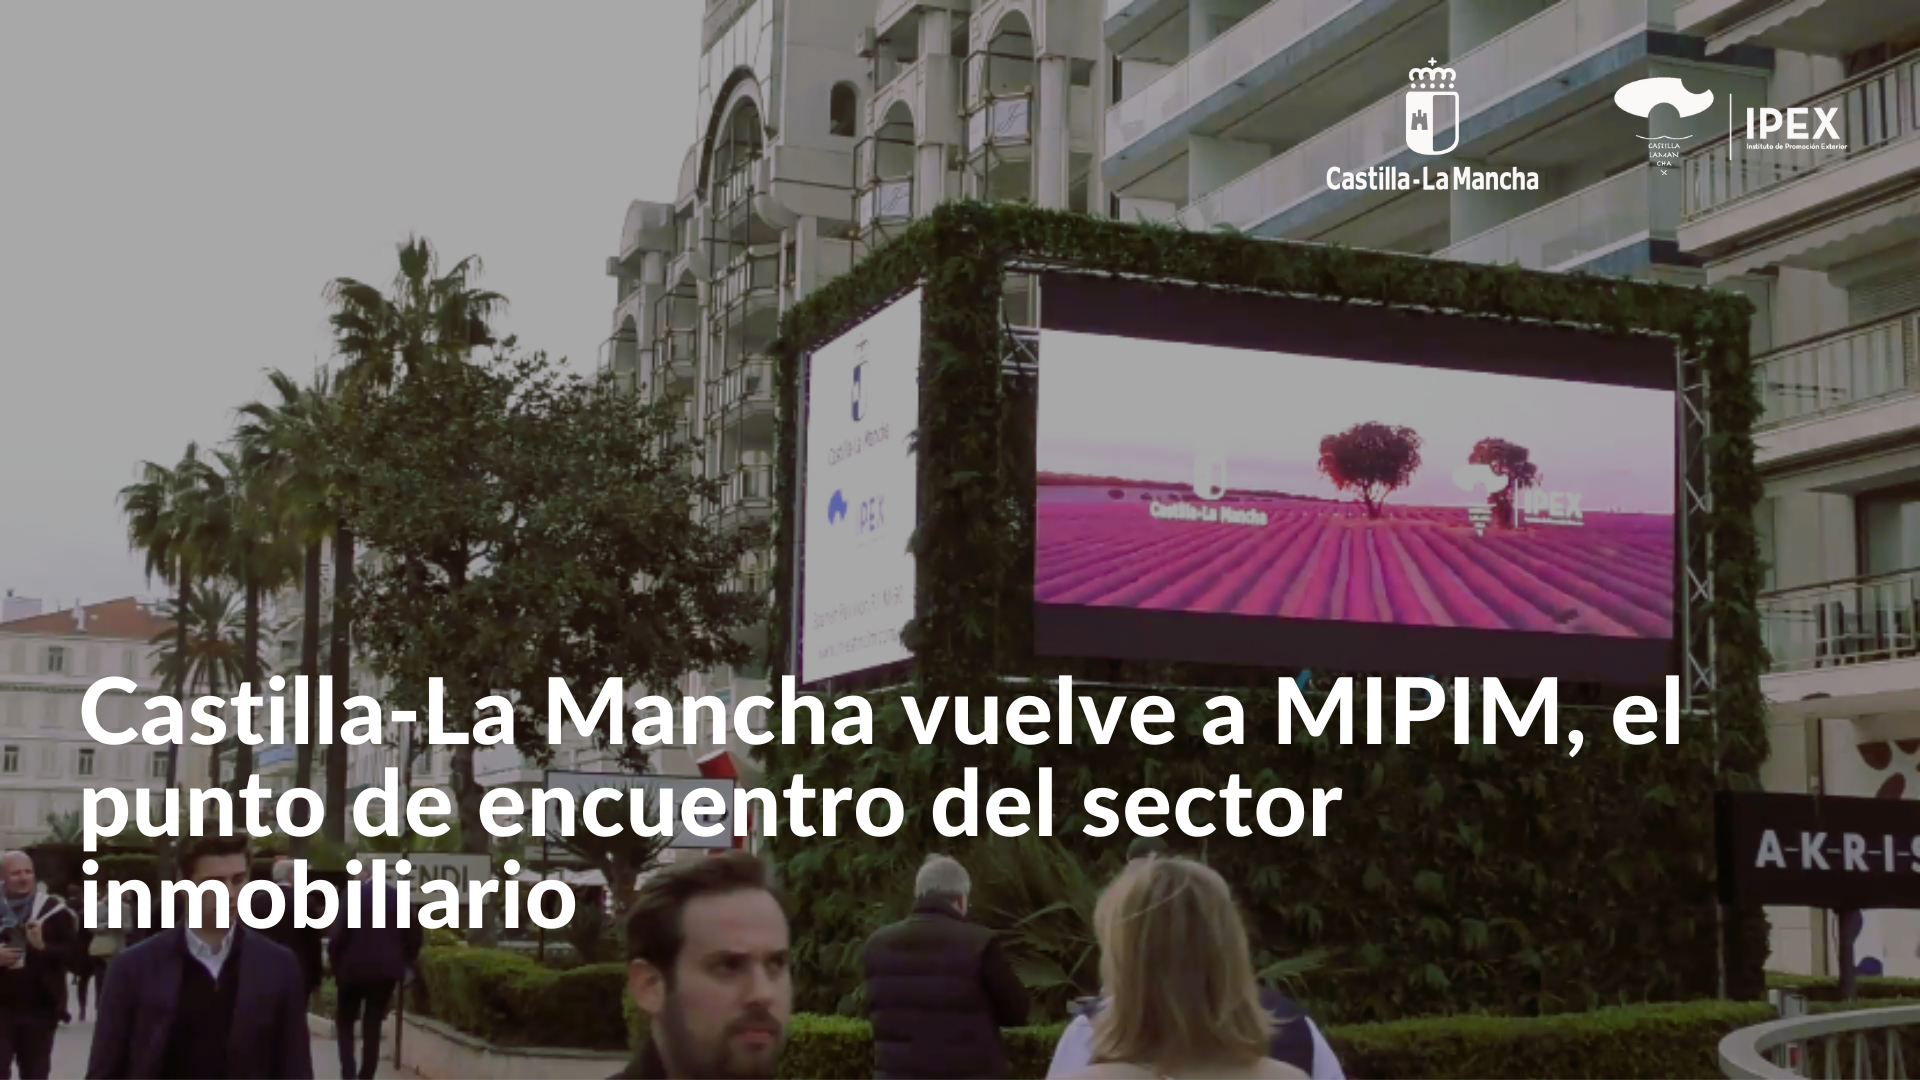 Castilla-La Mancha vuelve a MIPIM, el punto de encuentro del sector inmobiliario